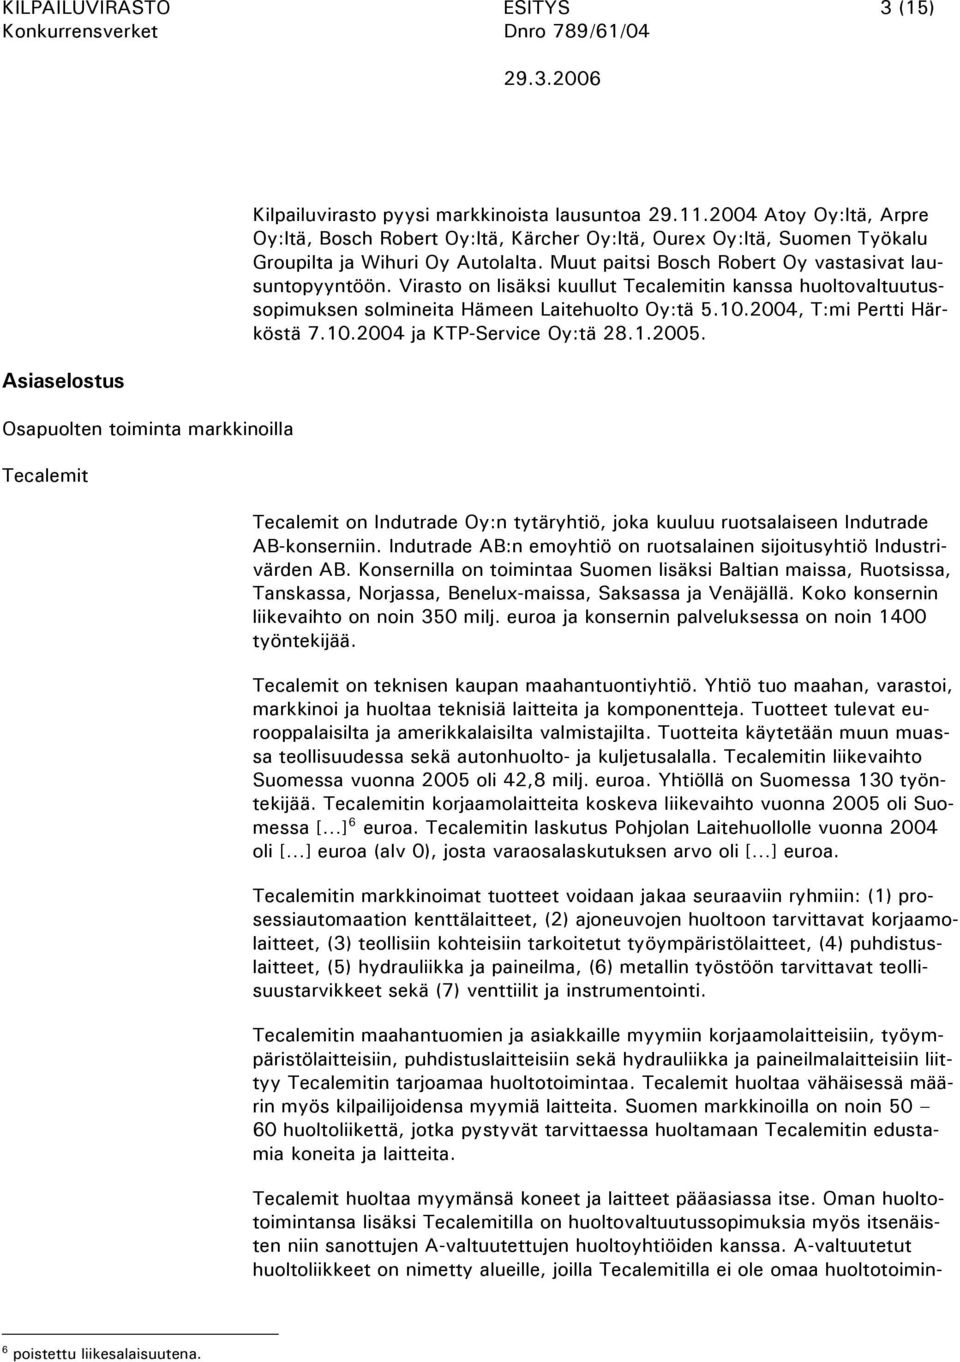 Virasto on lisäksi kuullut Tecalemitin kanssa huoltovaltuutussopimuksen solmineita Hämeen Laitehuolto Oy:tä 5.10.2004, T:mi Pertti Härköstä 7.10.2004 ja KTP-Service Oy:tä 28.1.2005.